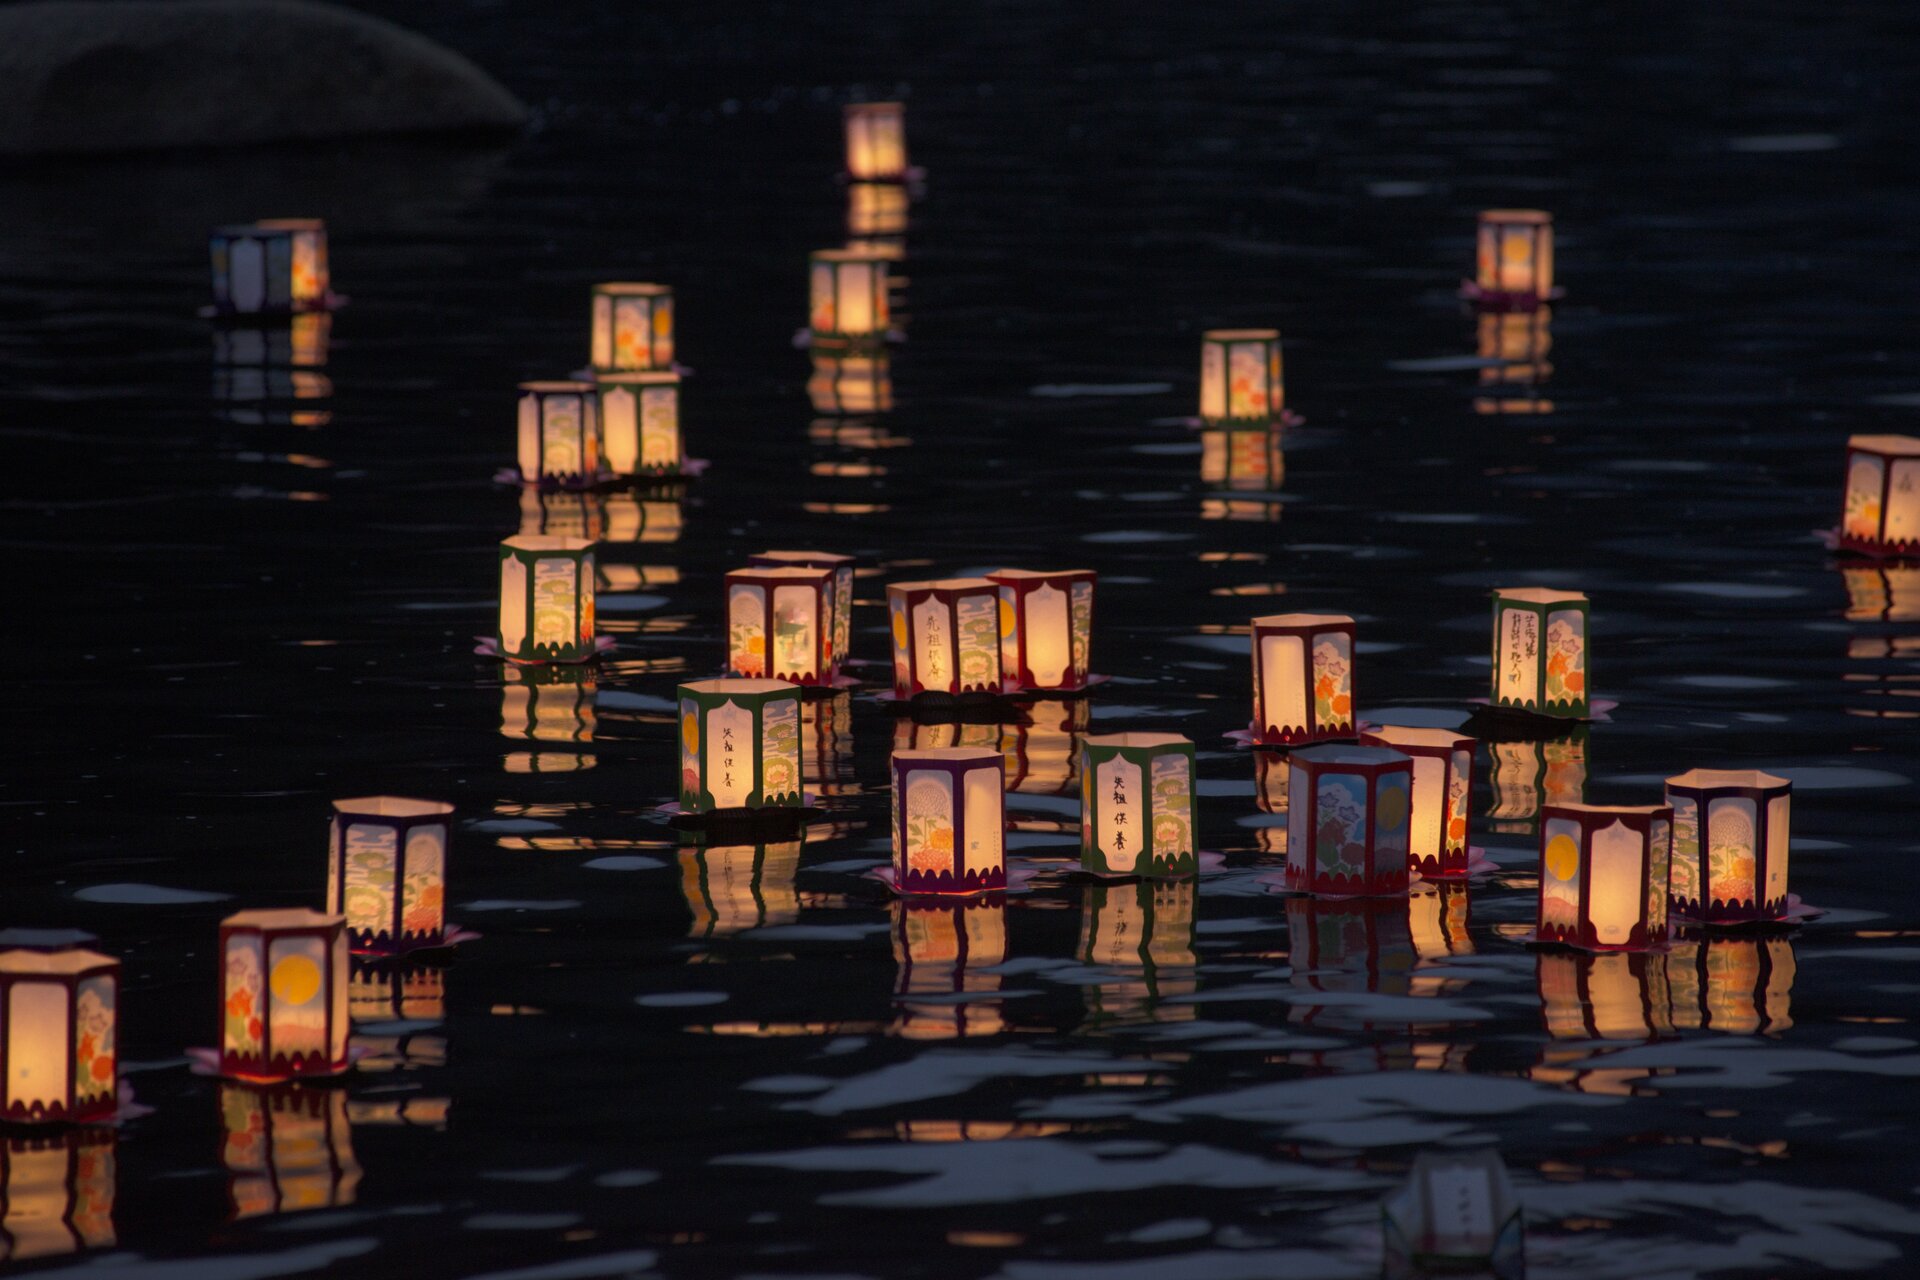 Ilustracja przedstawiająca lampiony pożegnalne, które pływają na wodzie. Lampiony są białe z brązowymi obwódkami. Z lampionów wydobywa się światło.